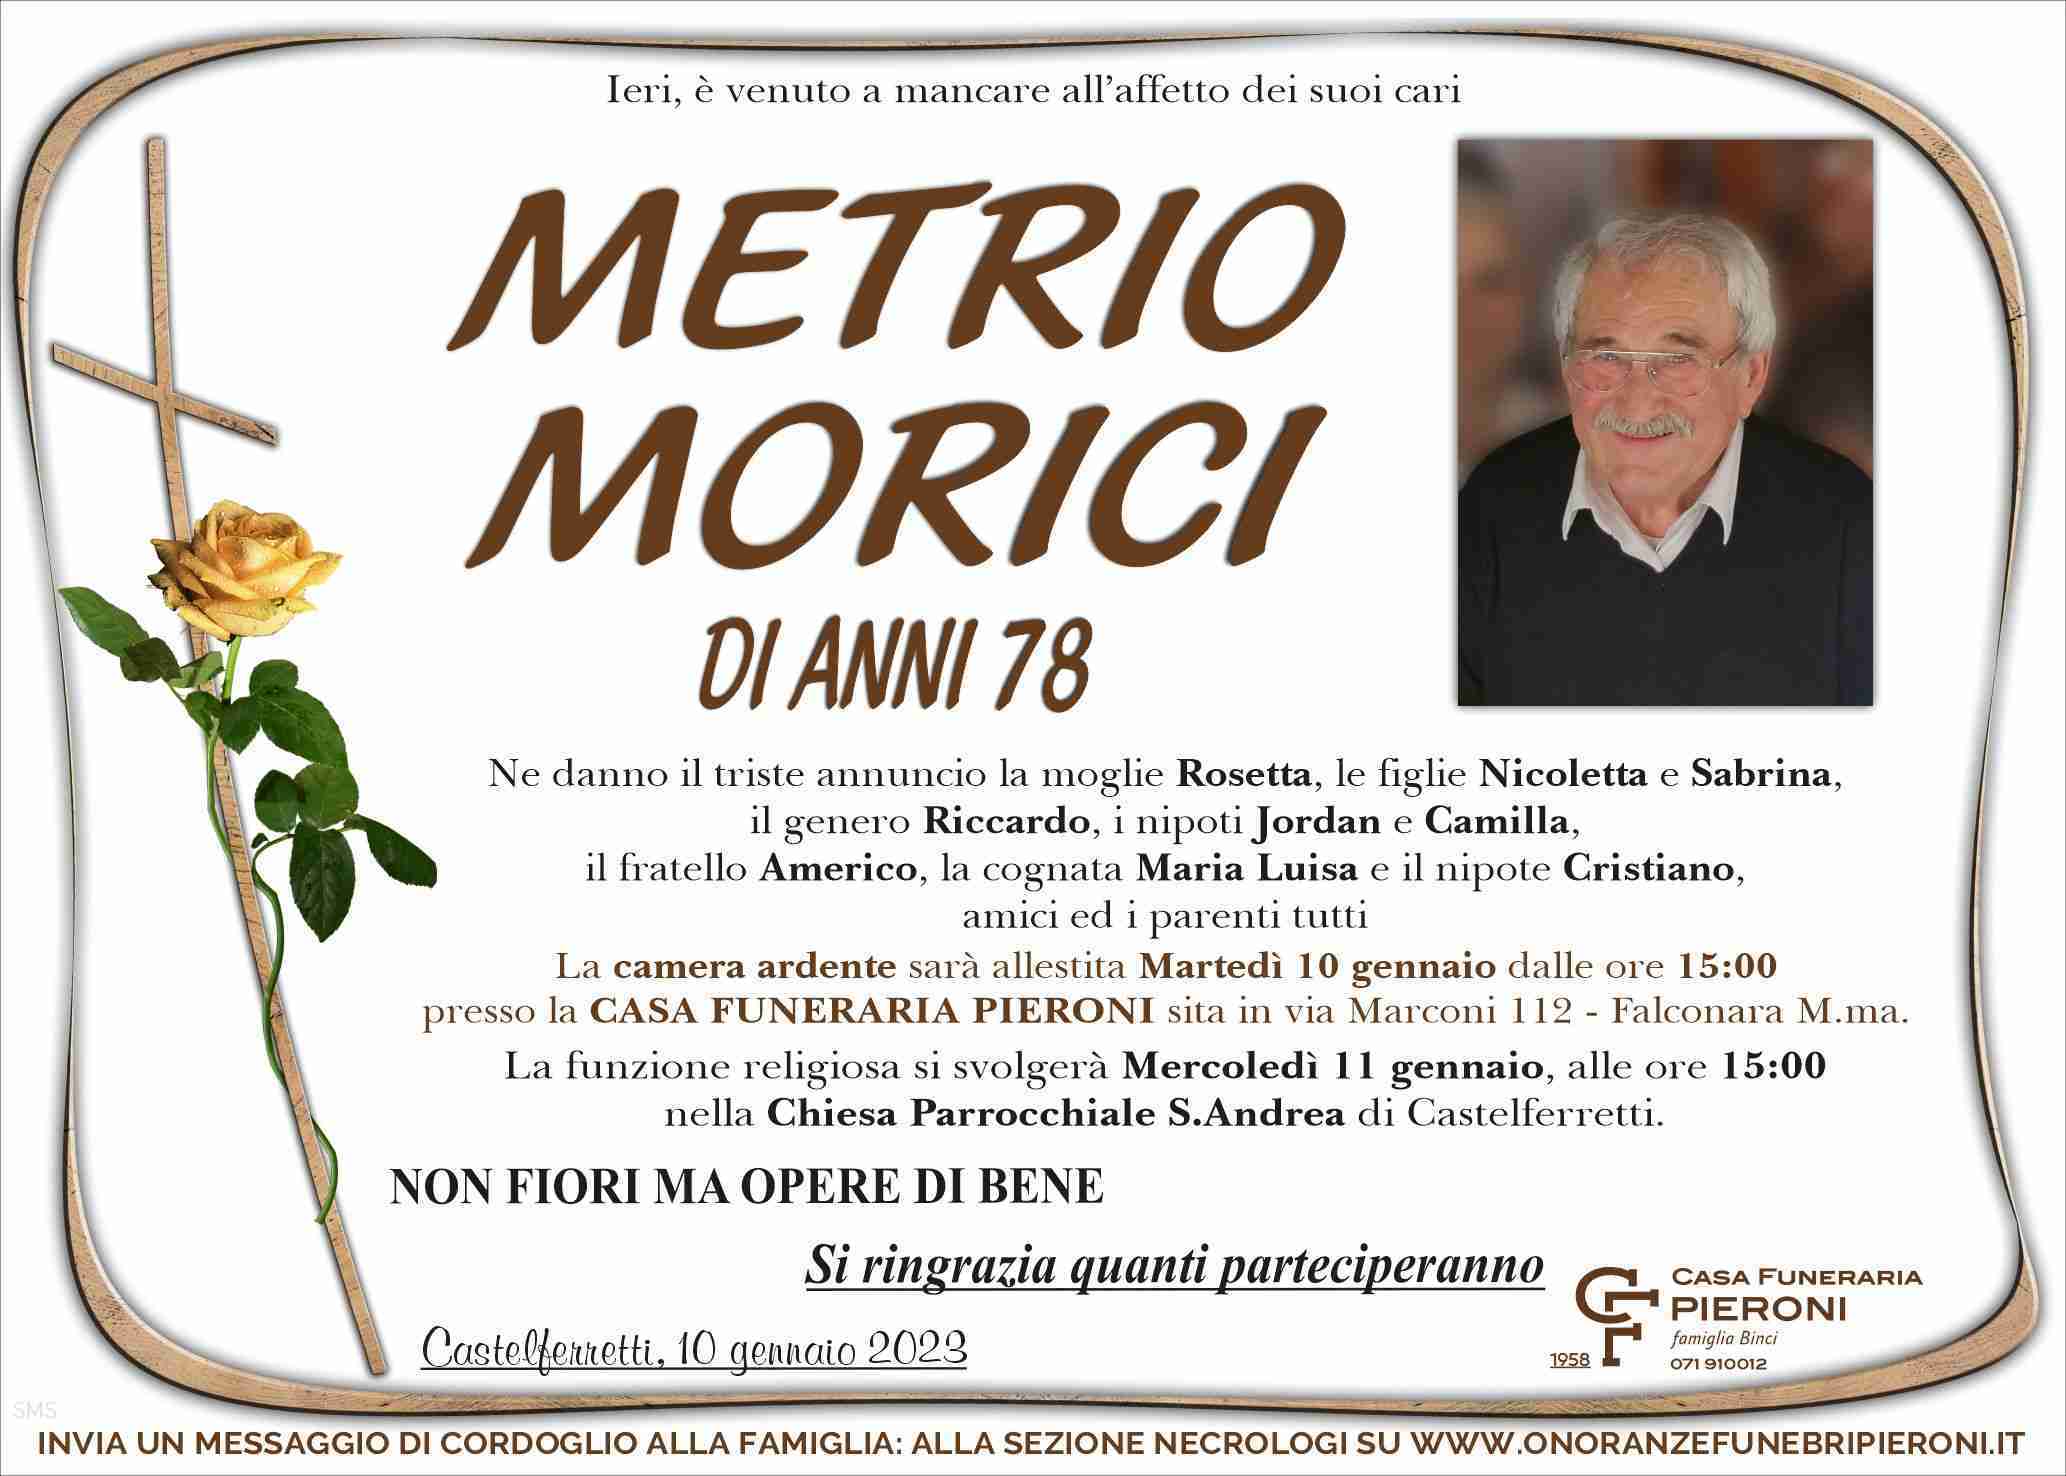 Metrio Morici